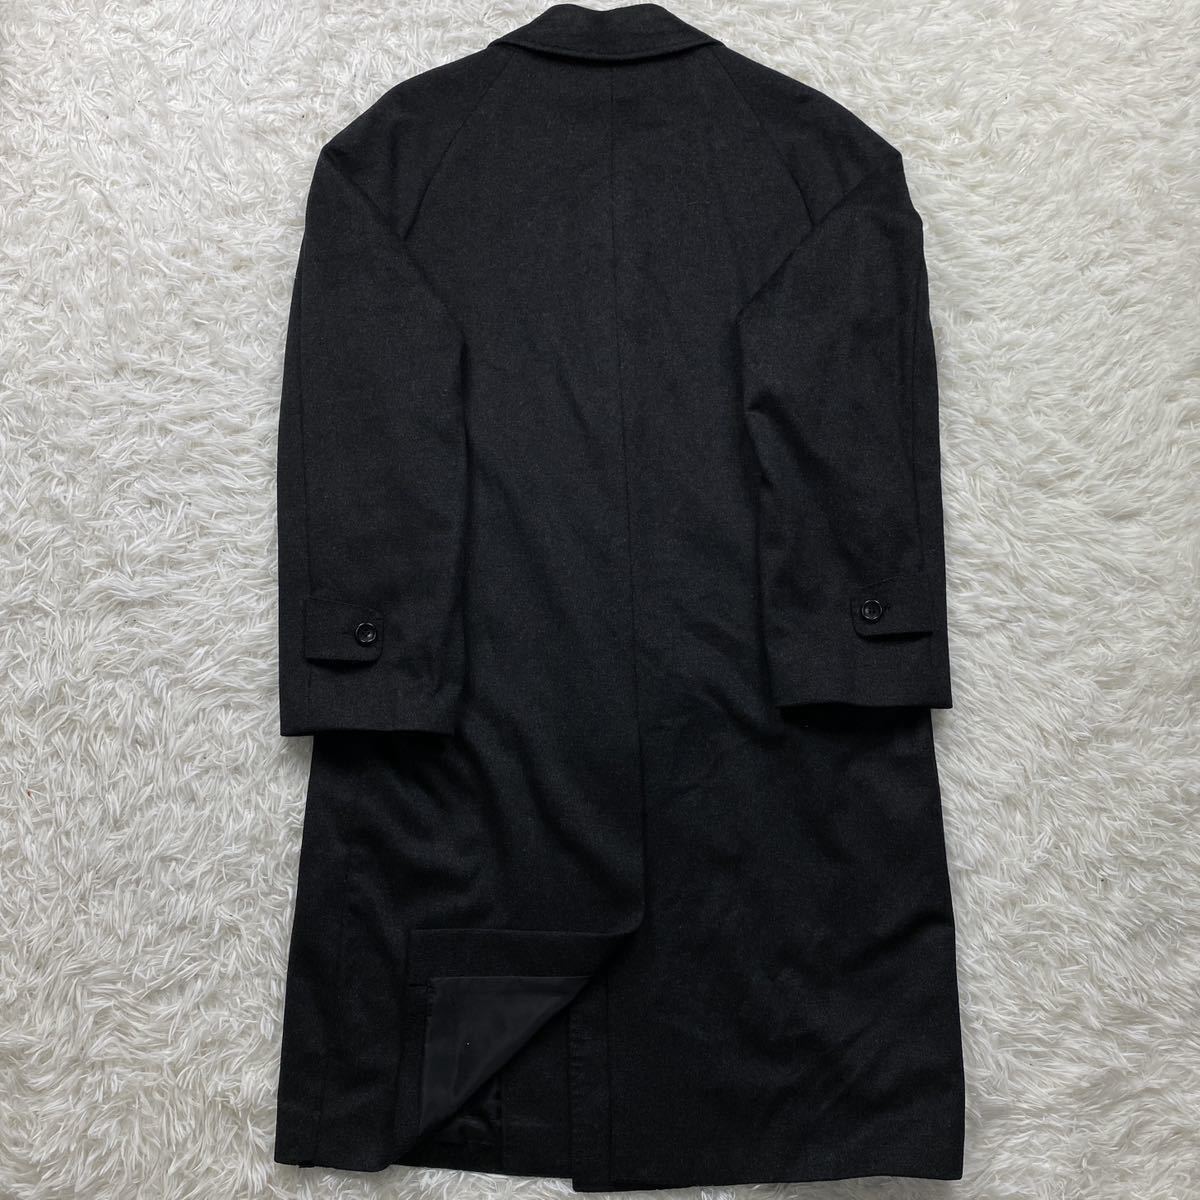 カシミヤ100% ステンカラー ロングコート ブラック Mサイズ 極美品